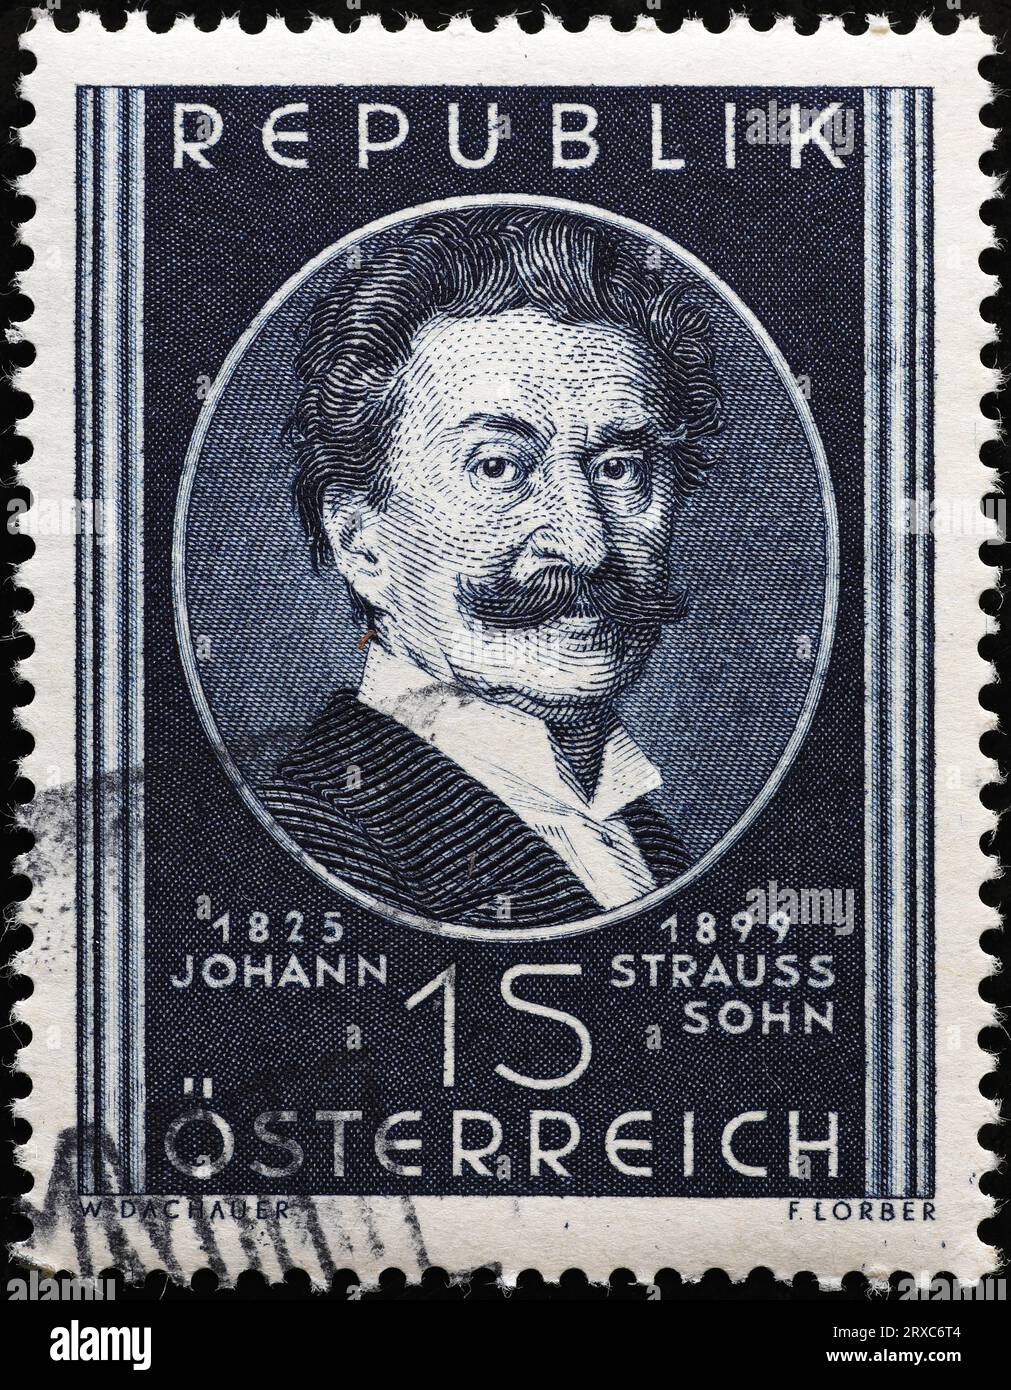 Johann Strauss II. Auf der alten österreichischen Marke Stockfoto